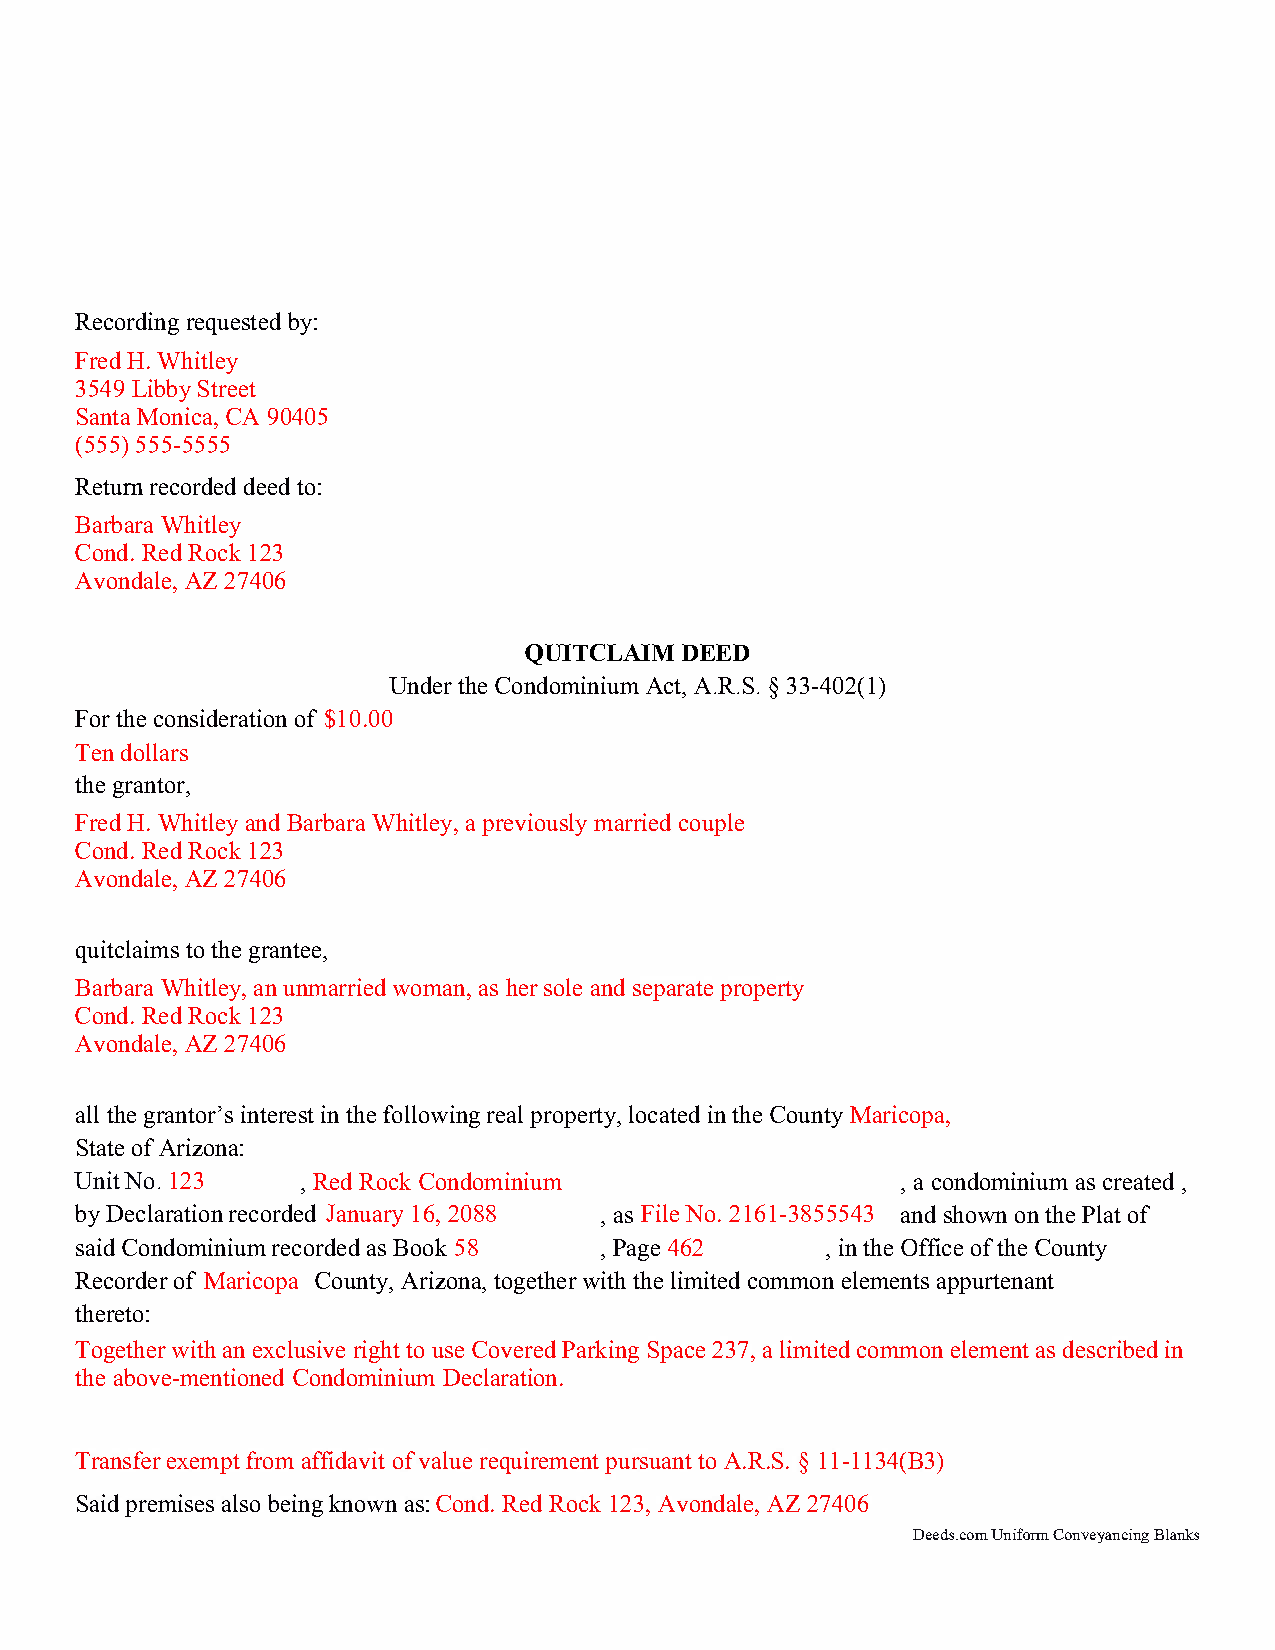 Completed Example of the Quitclaim Deed Condominium Document